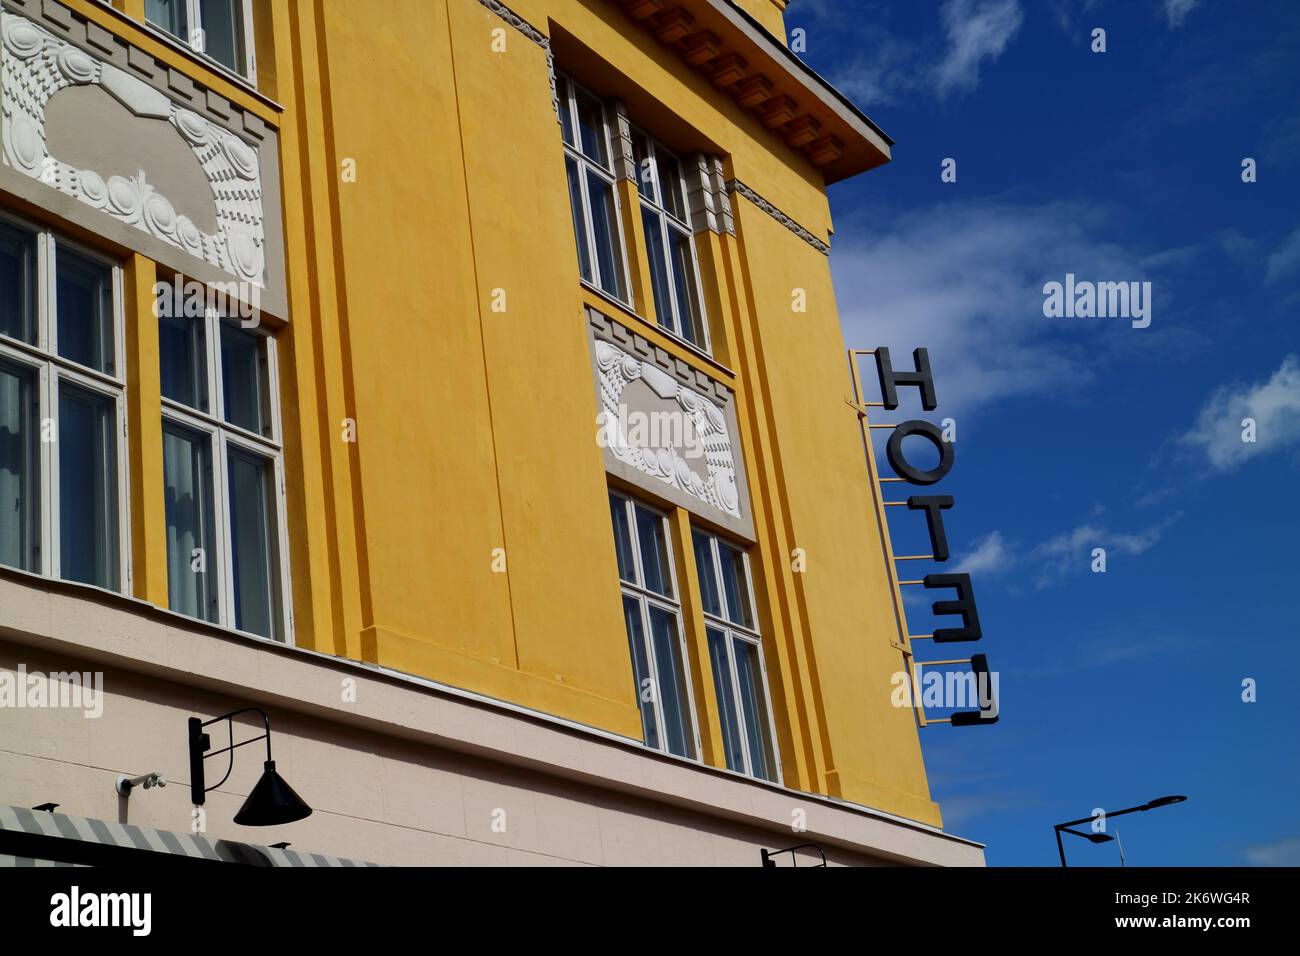 La señal del hotel está en la esquina de un edificio antiguo en Porvoo, Finlandia Foto de stock